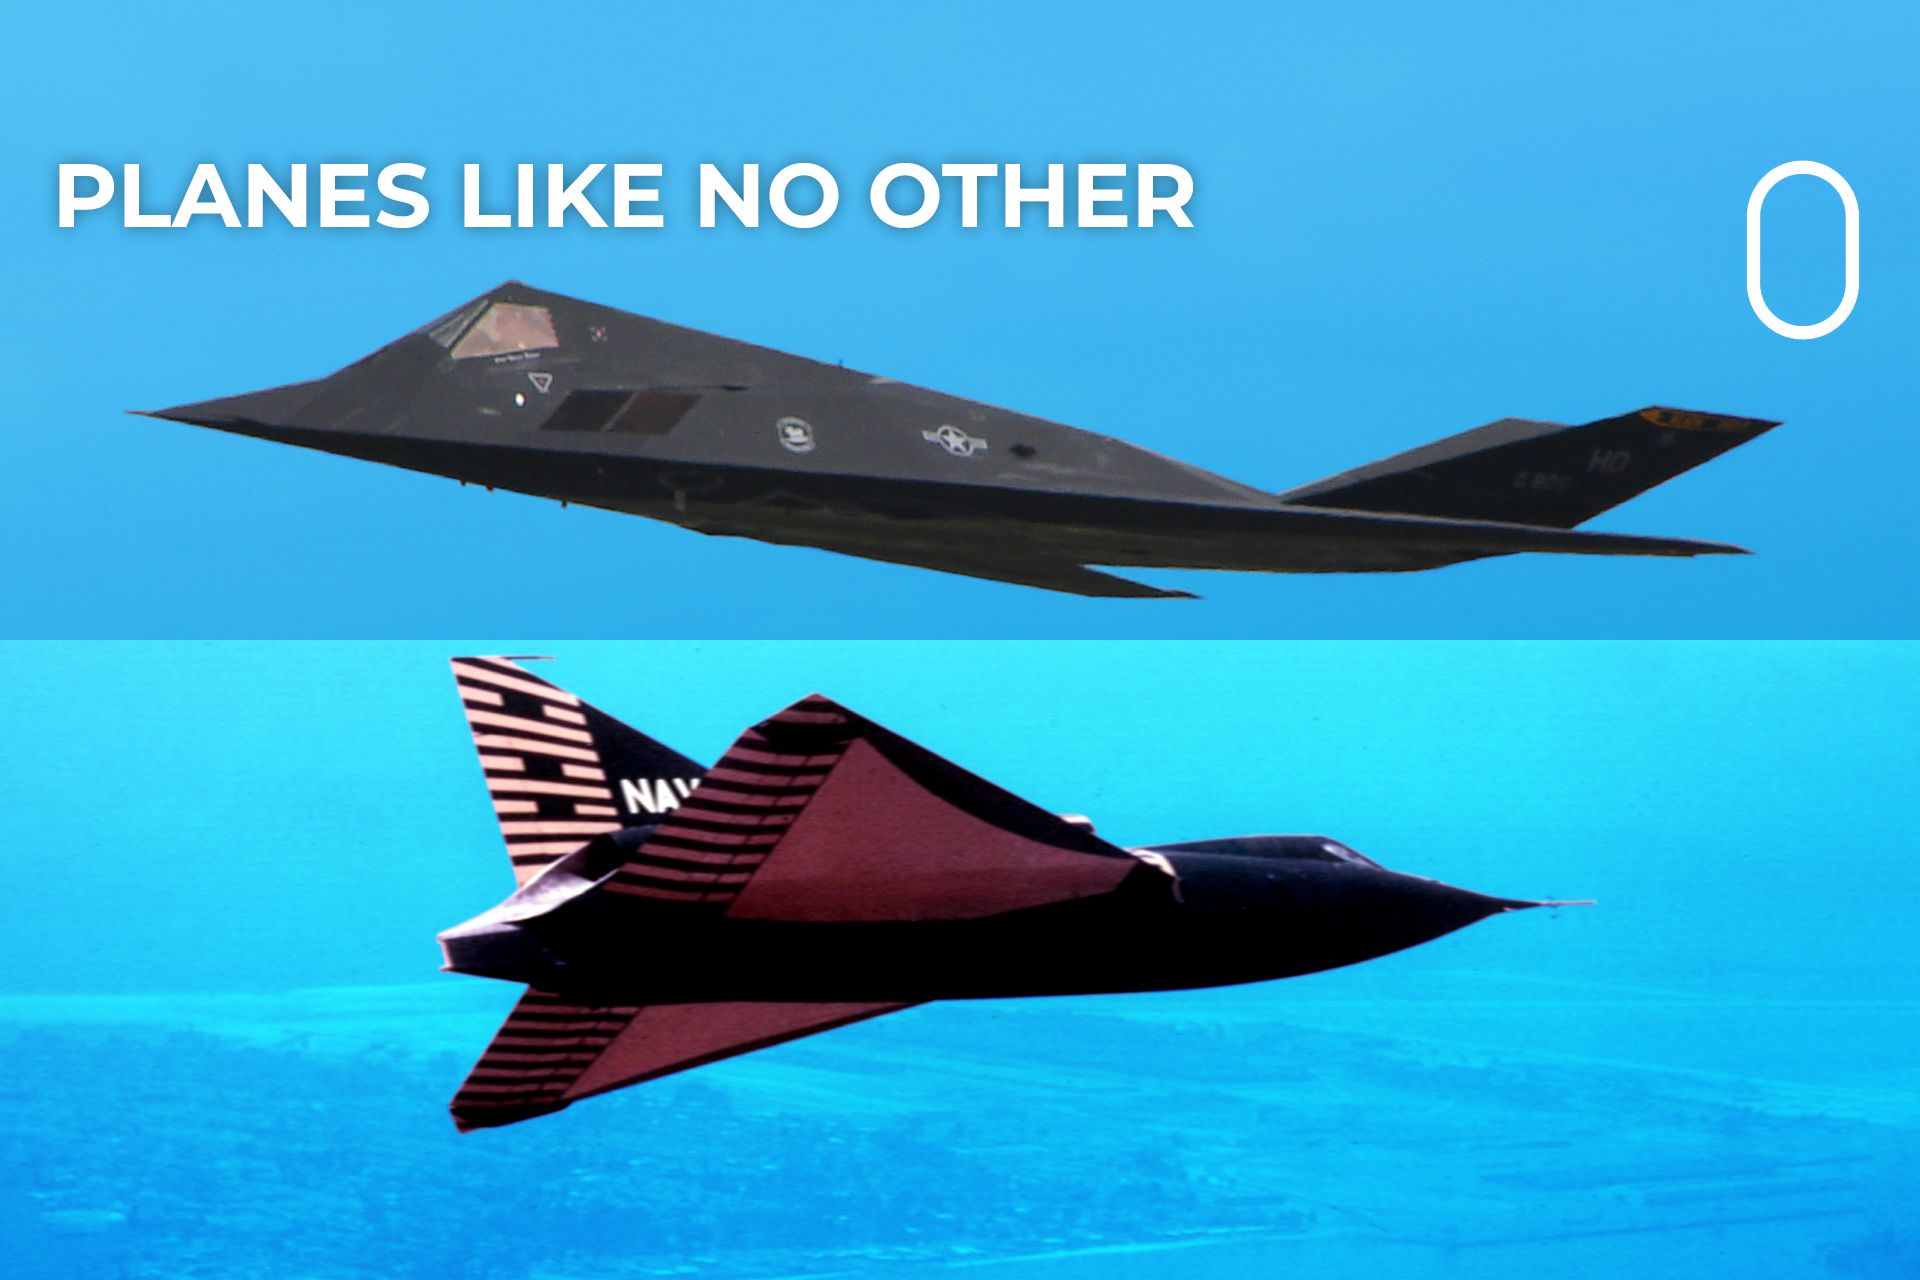 Top 5: The World's Weirdest Military Aircraft